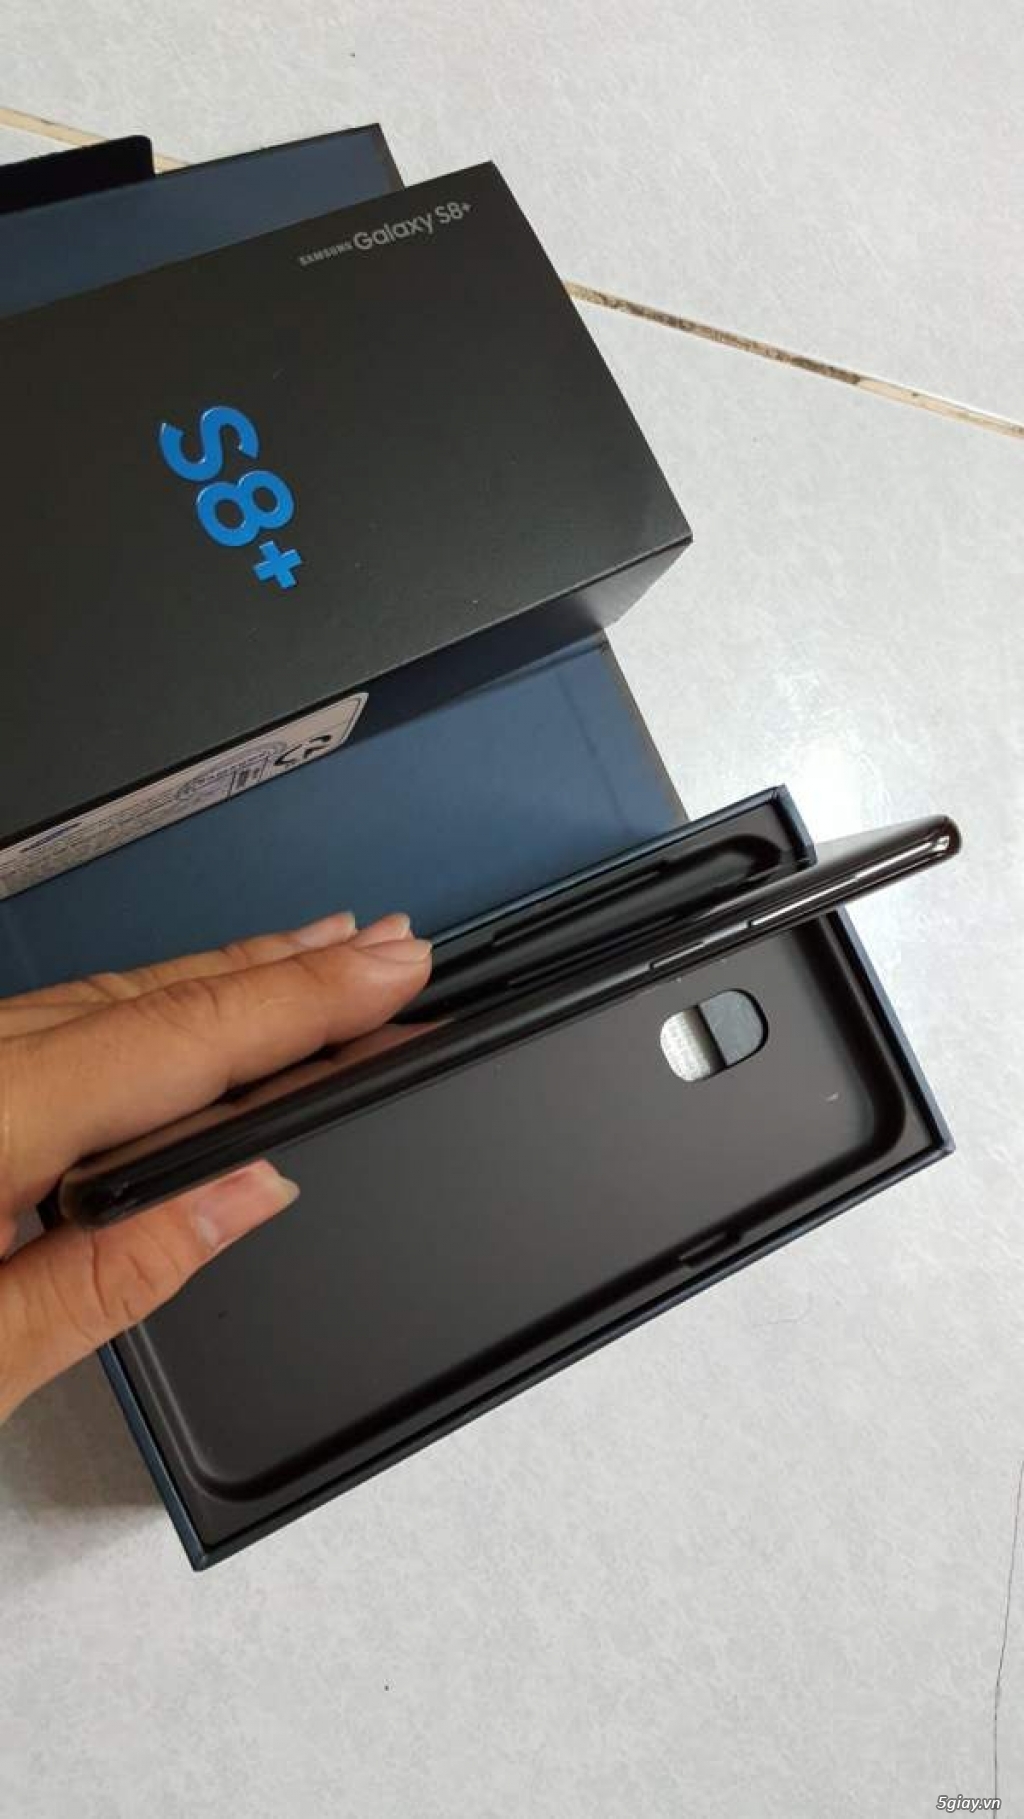 S8 plus đen 2 sim full box, Hàng Việt Nam bảo hành 5/2019 - 2